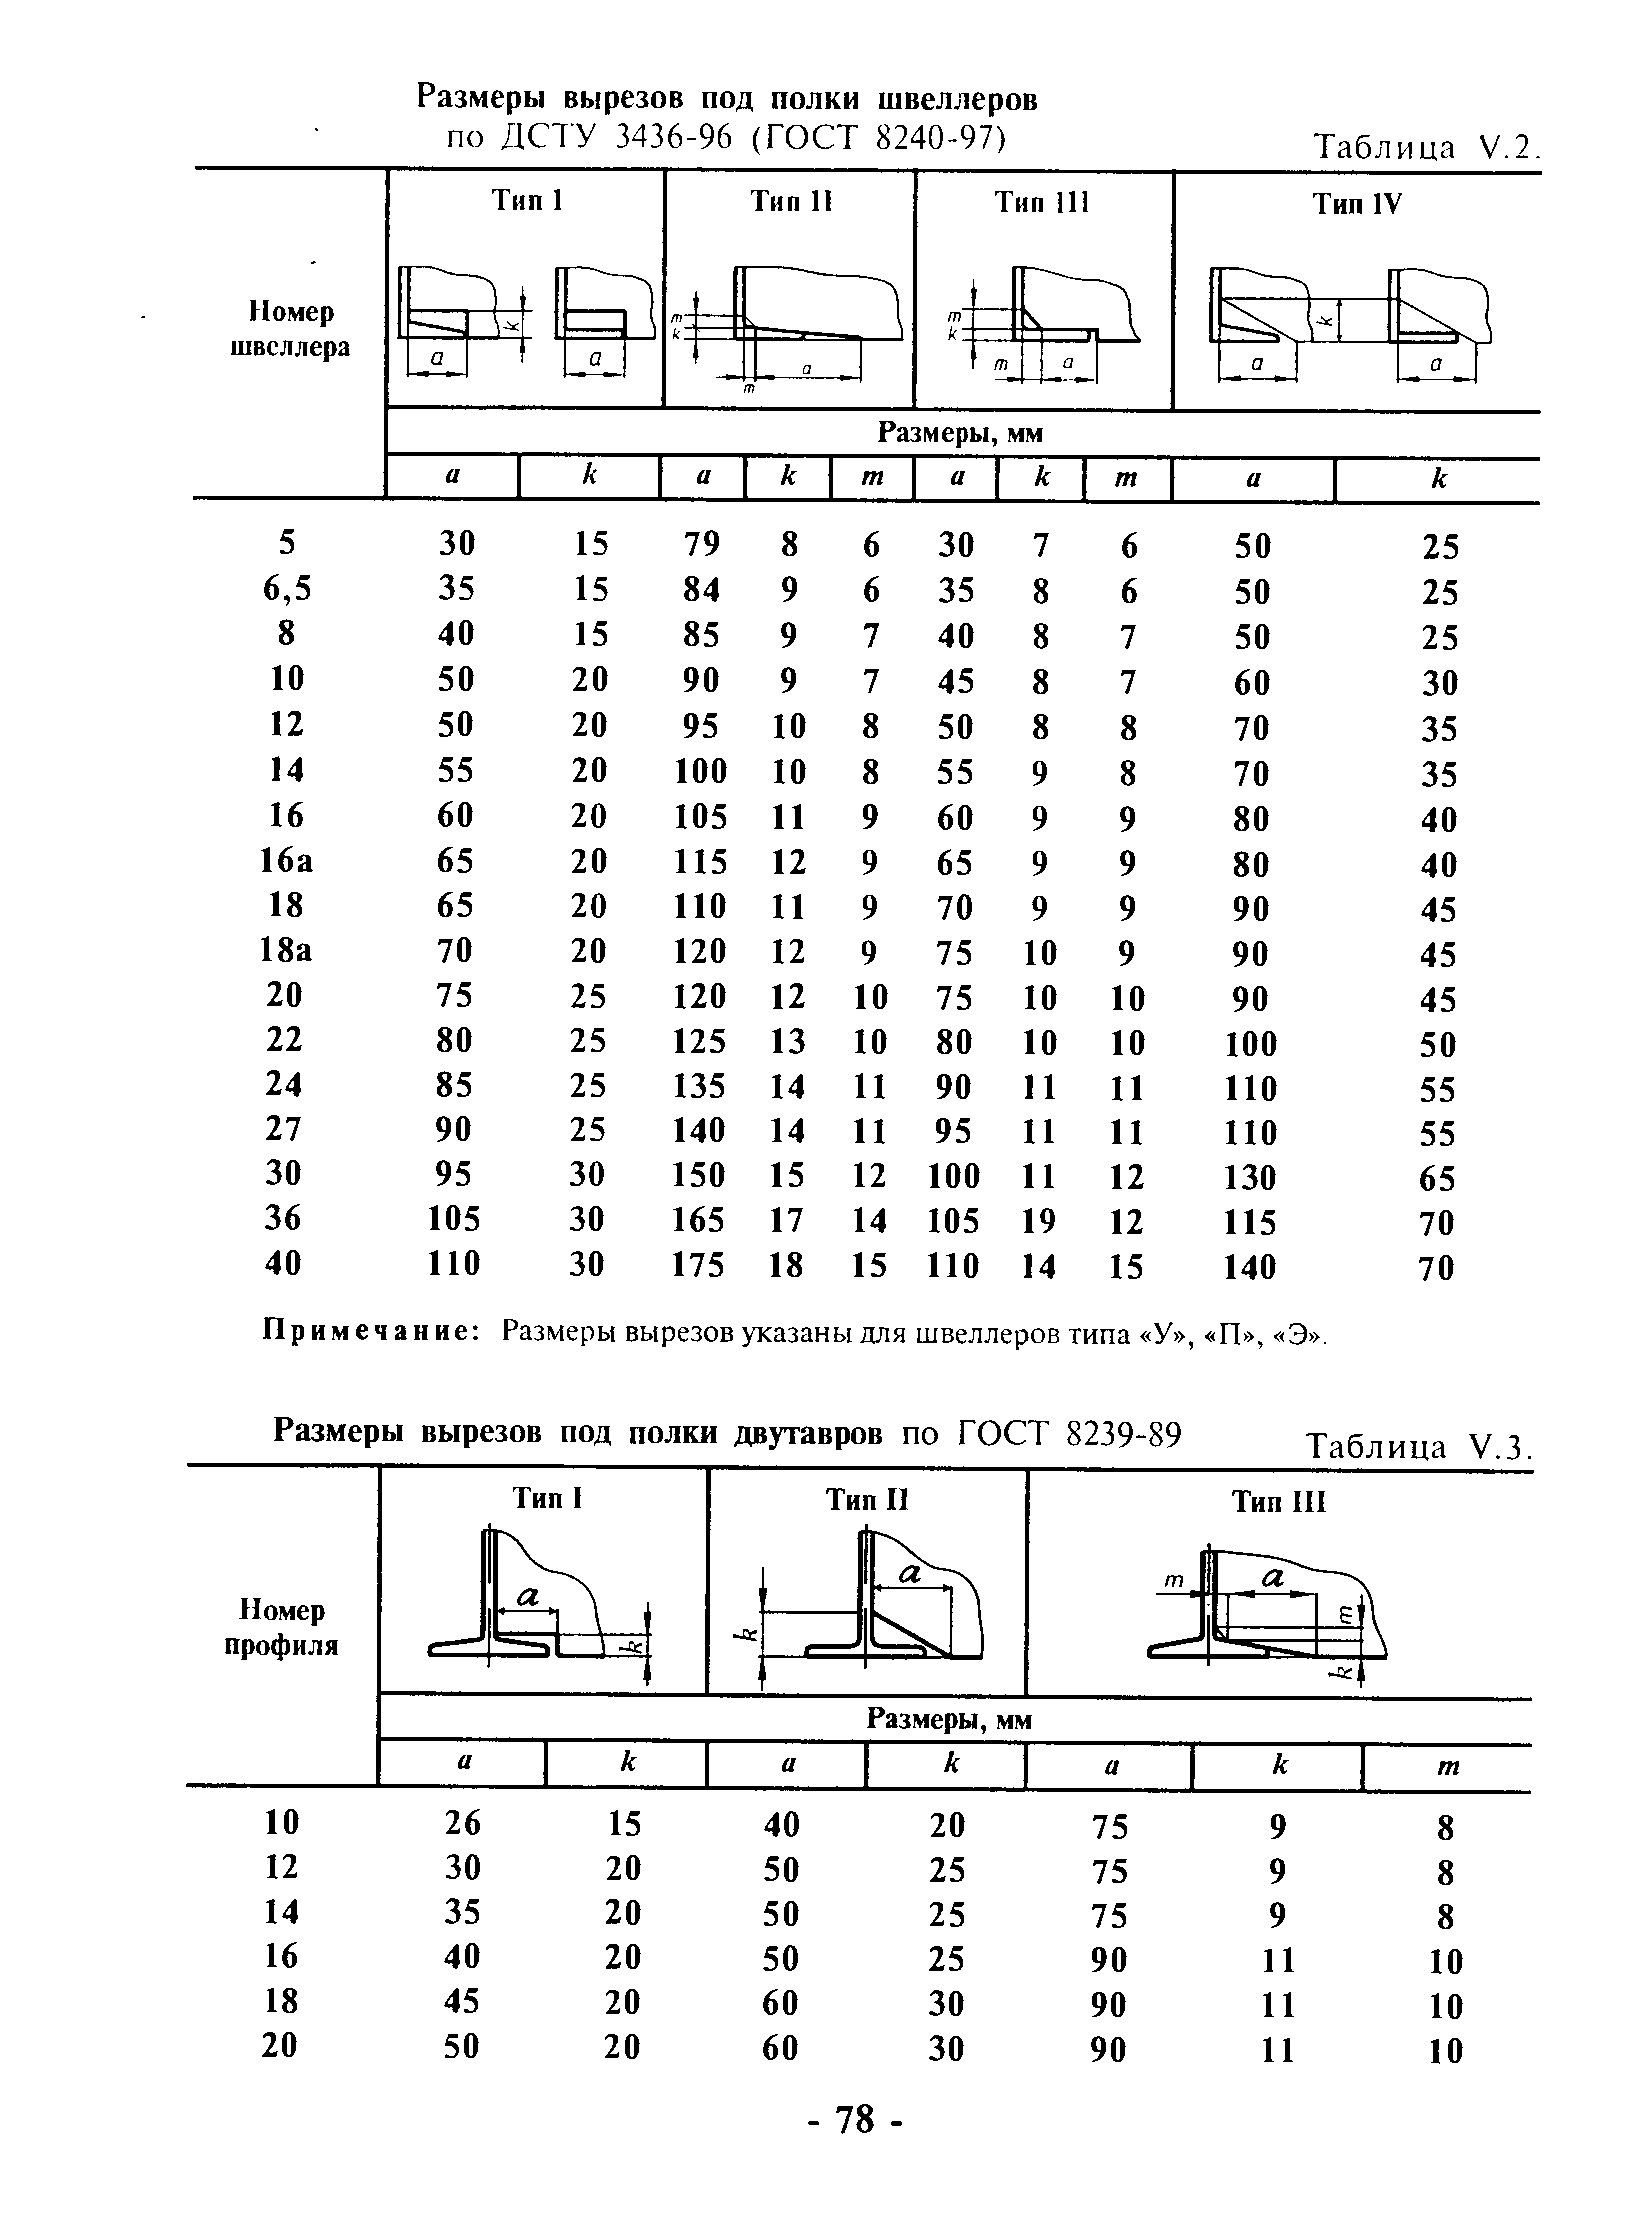 Примечание Размеры вырезов указаны для швеллеров типа У , П , Э .